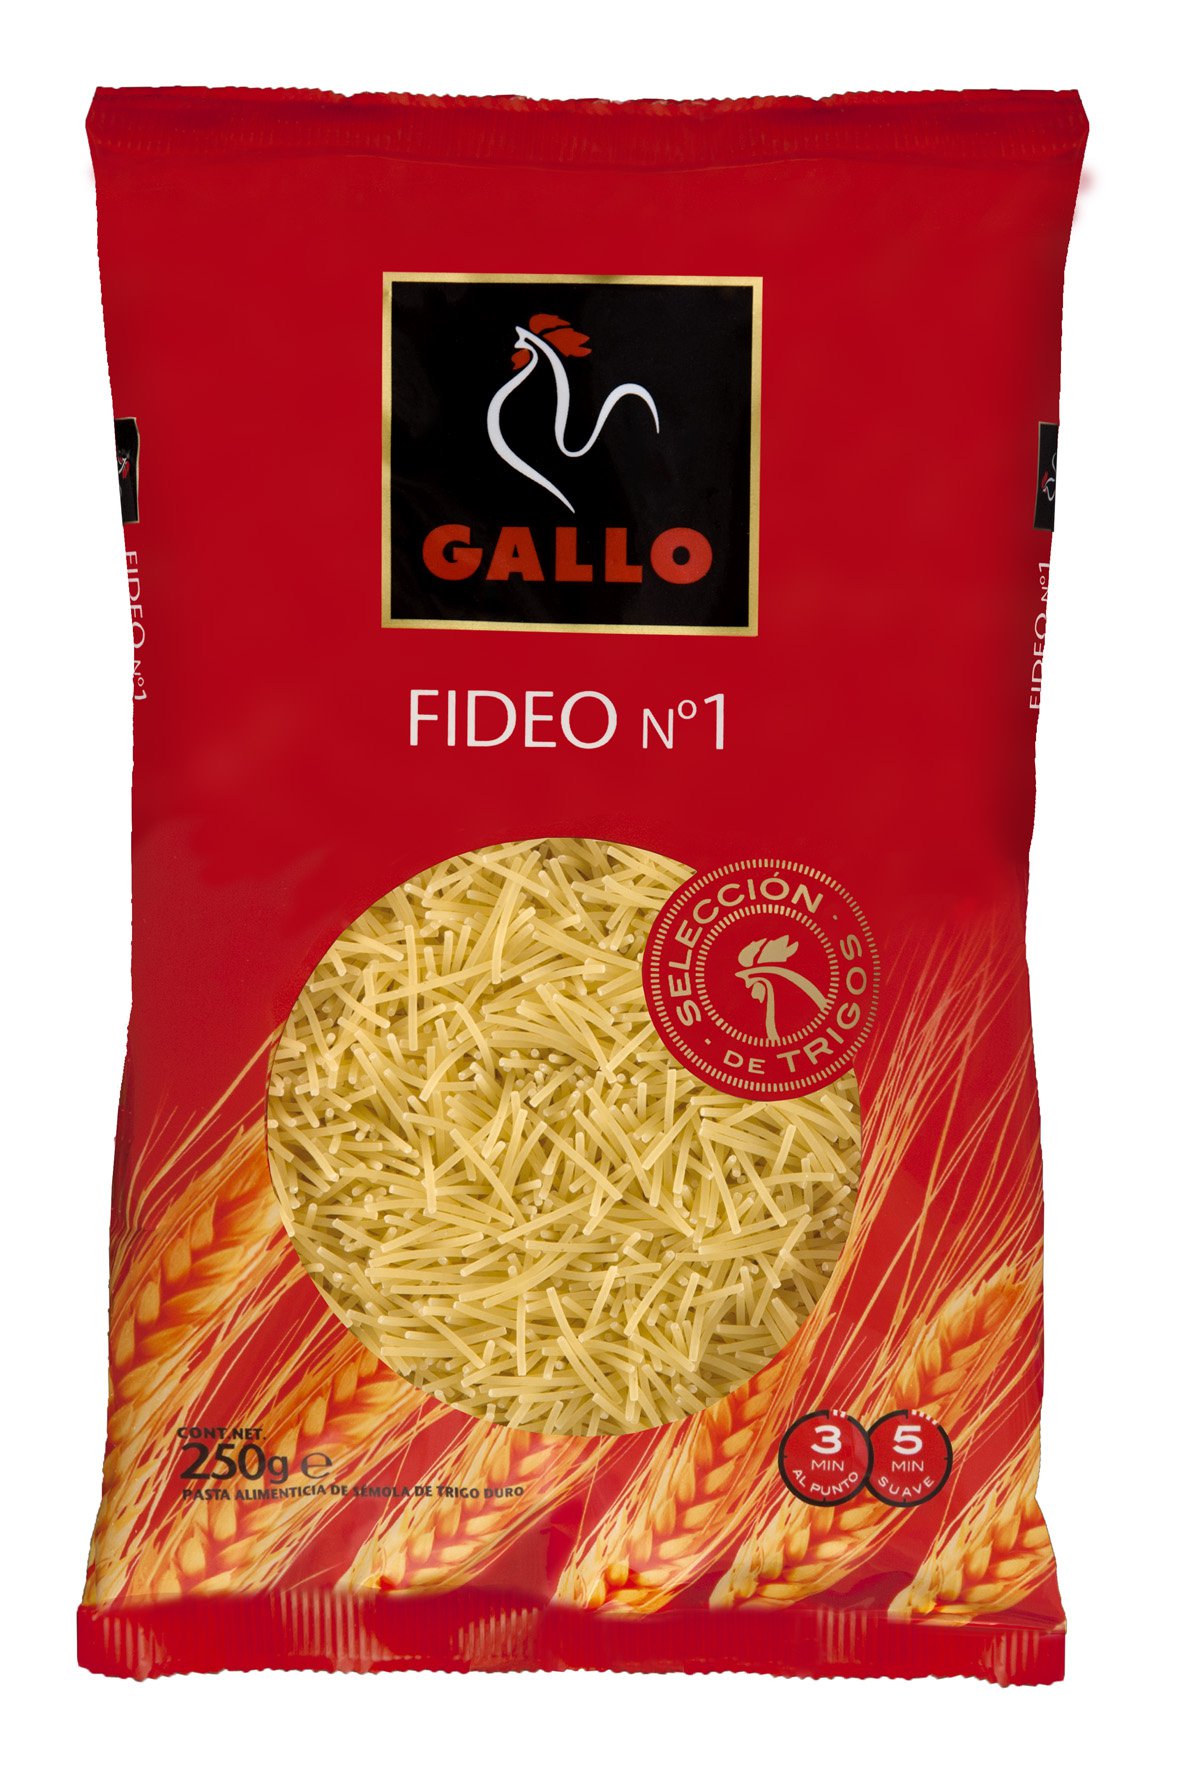 FIDEO GALLO Nº 1 FINO 250 g.